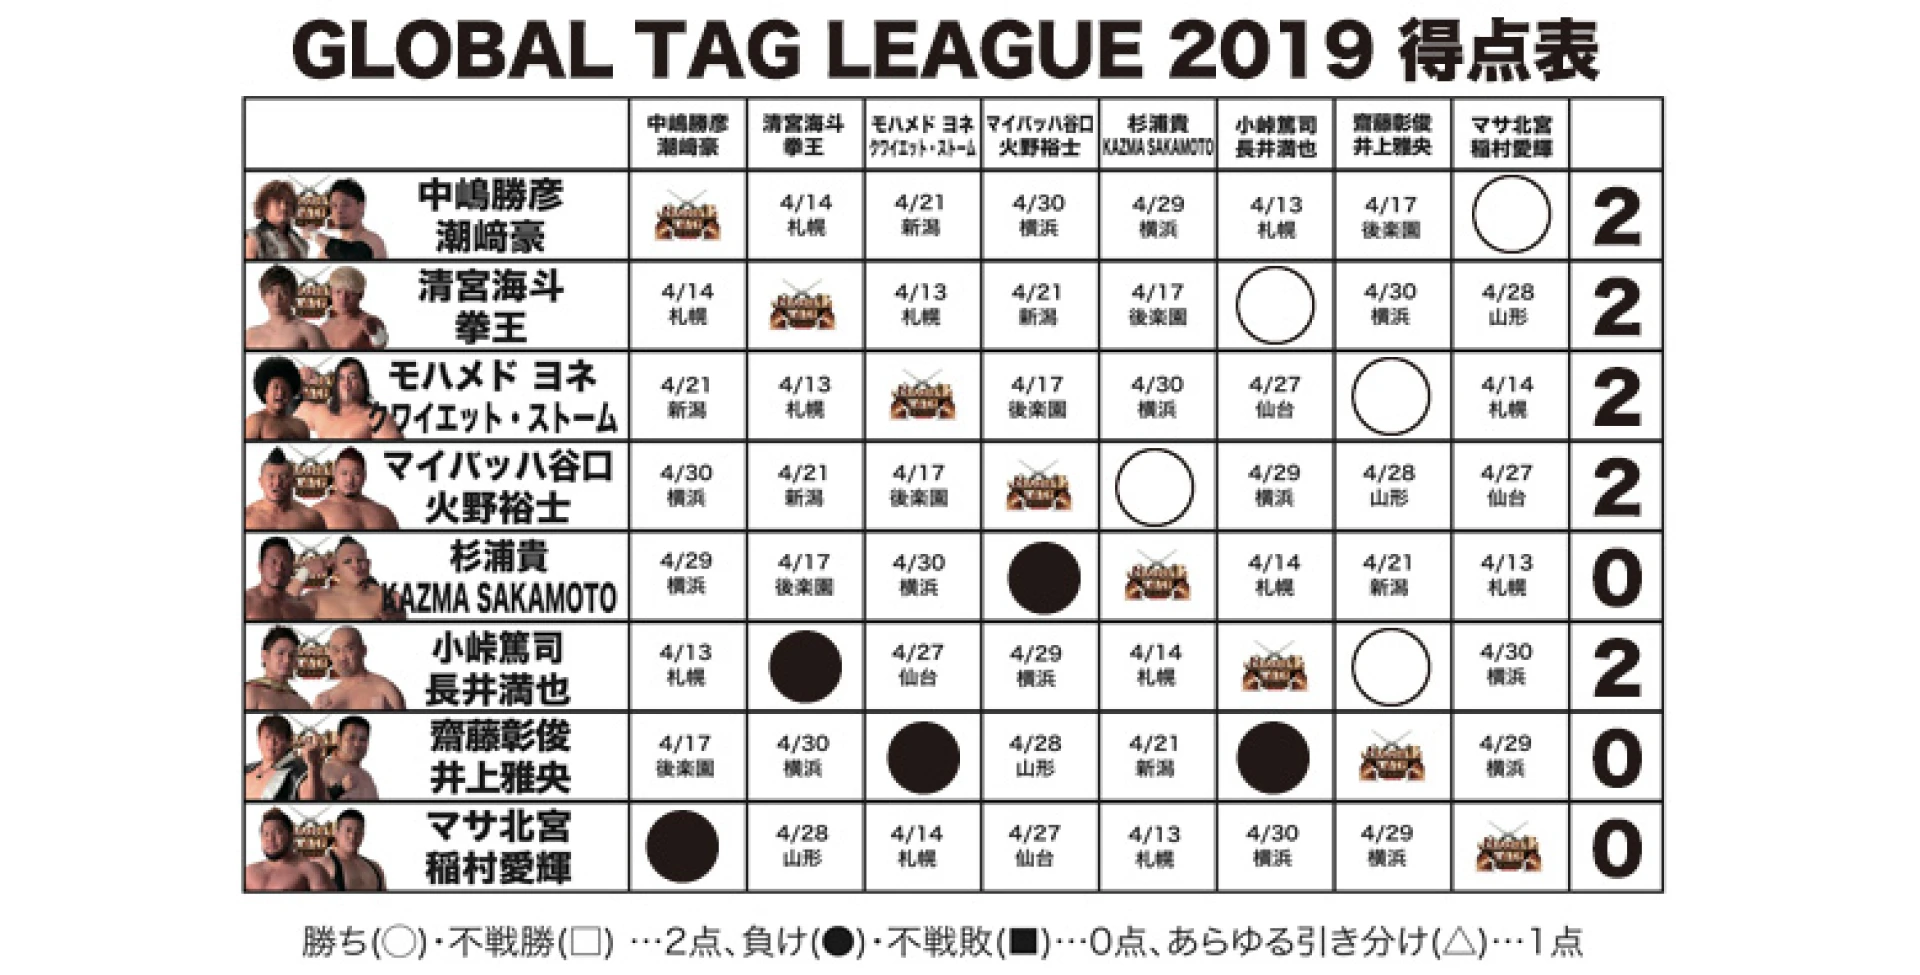 【4.7奈良大会終了時の得点状況】『GLOBAL TAG LEAGUE 2019』得点表